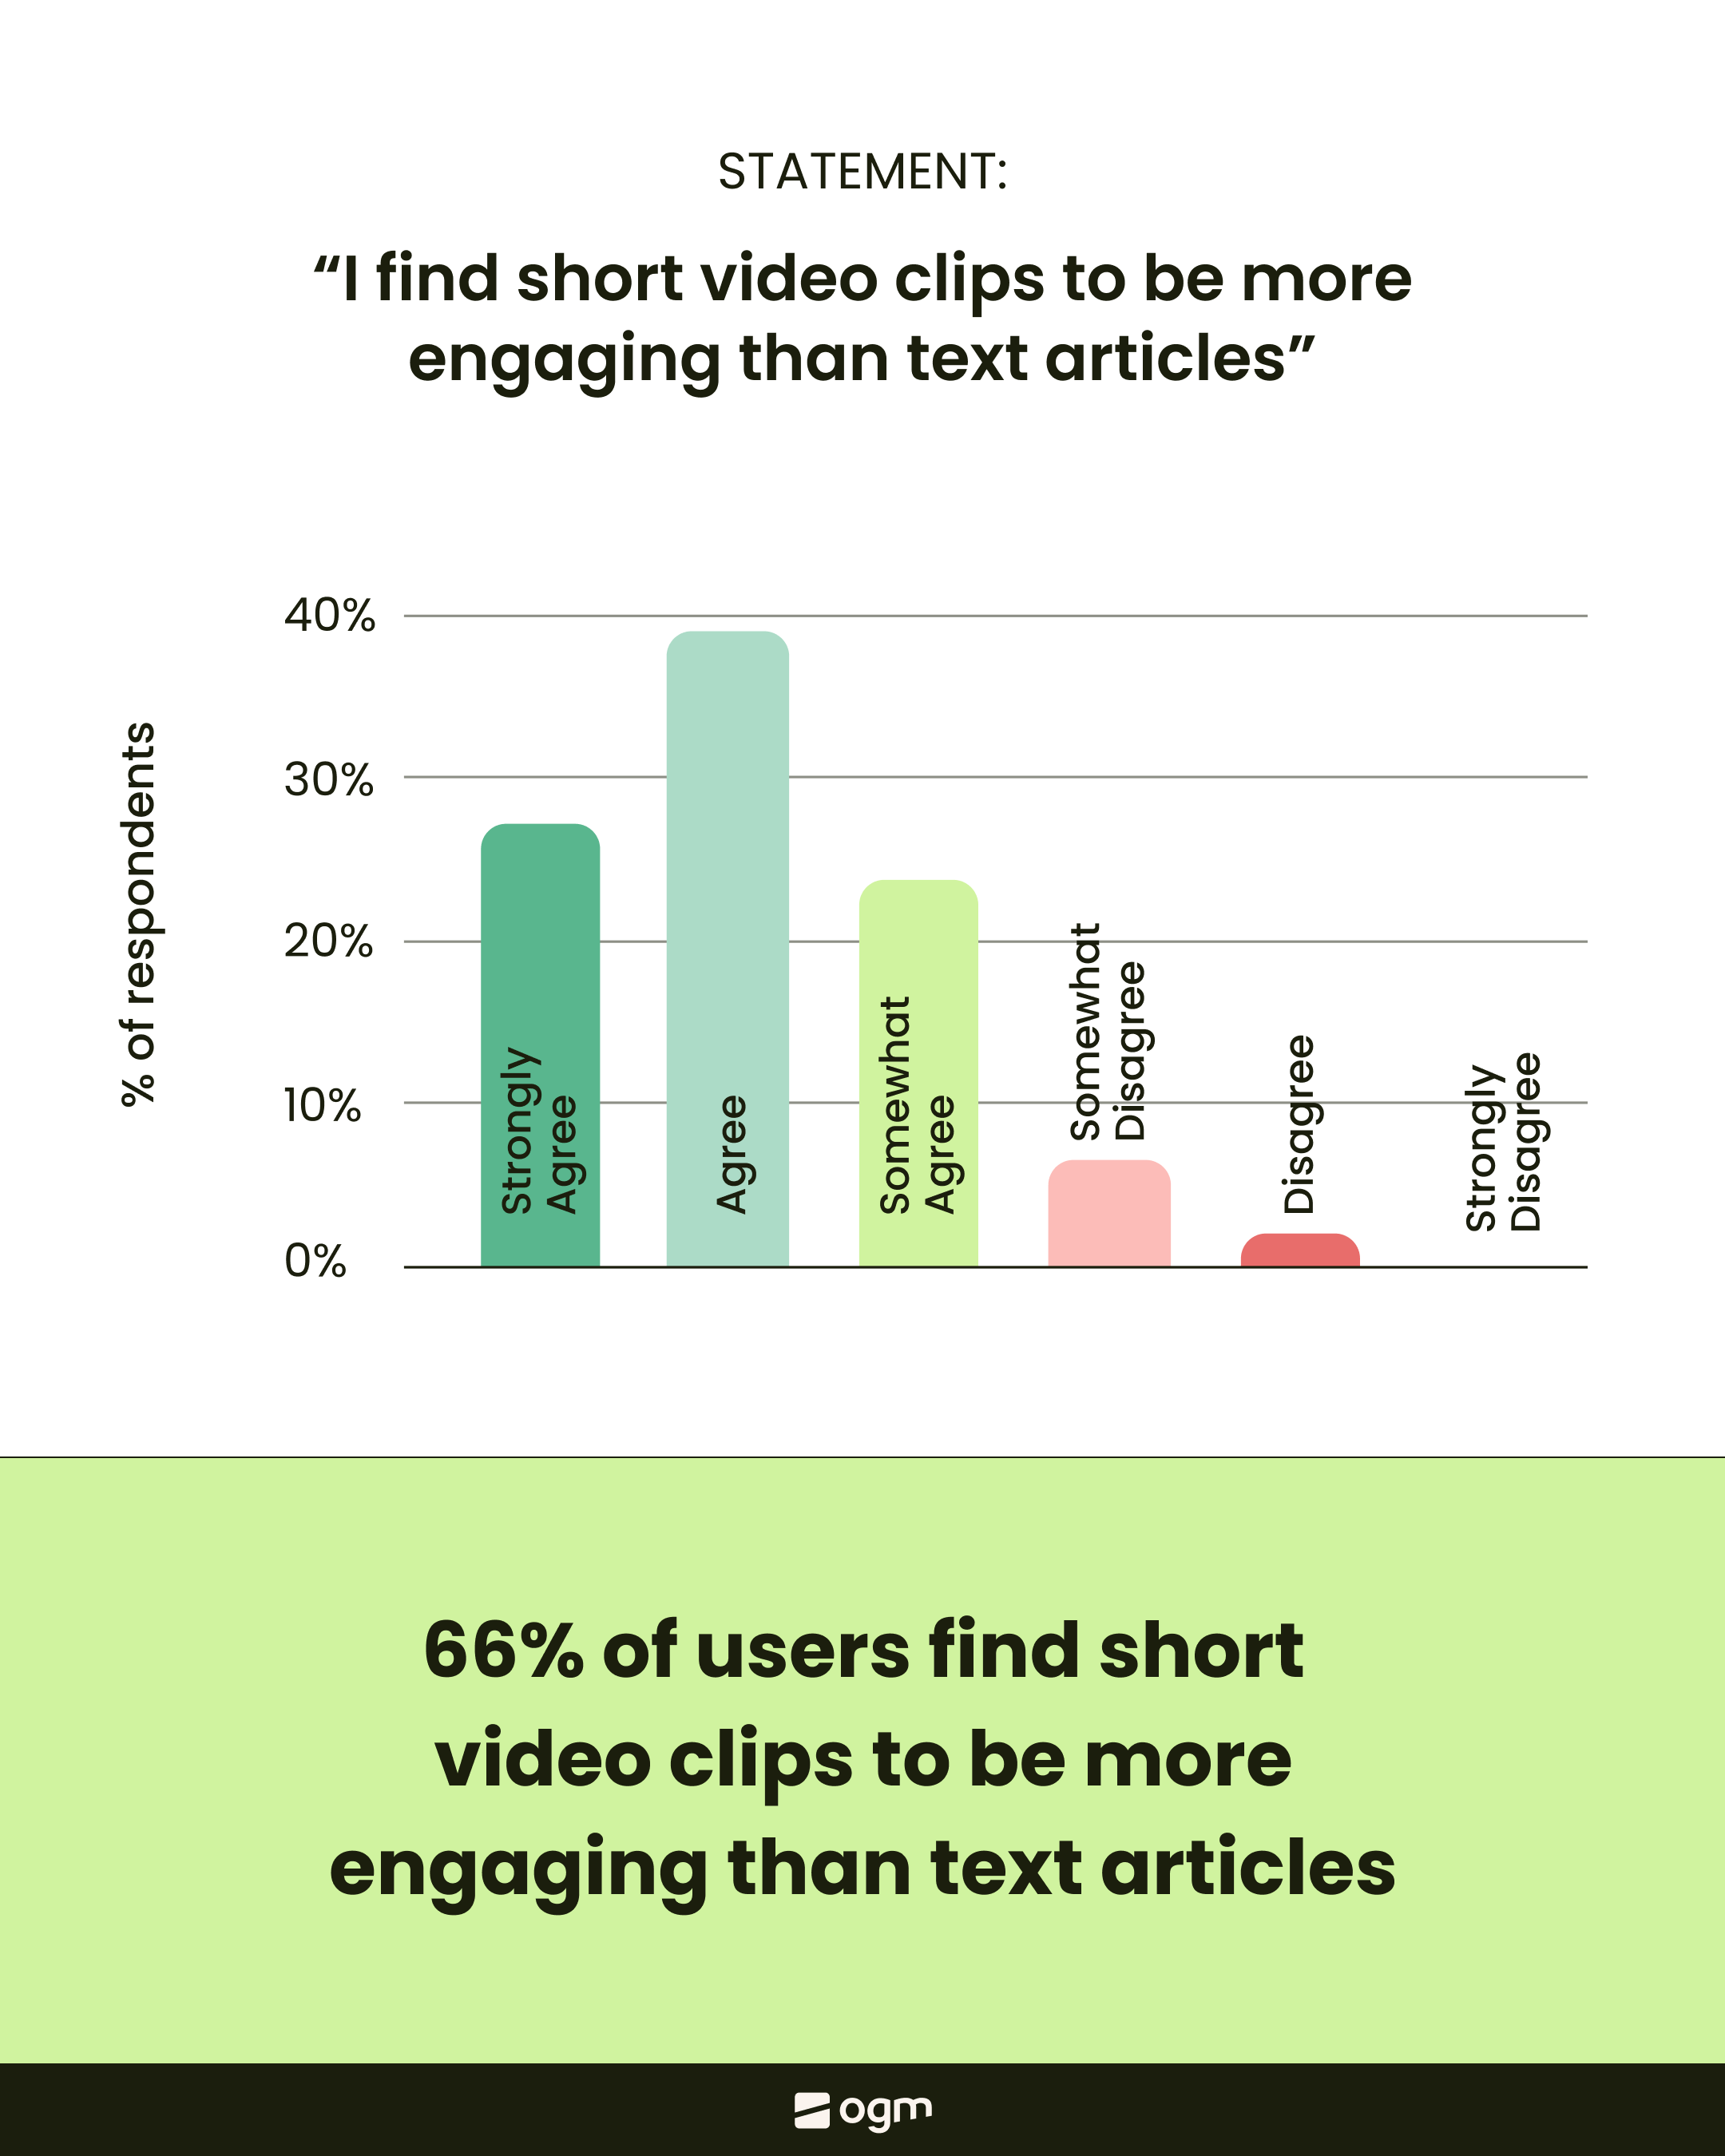 Kurzvideos interessieren die Nutzer stärker als Text